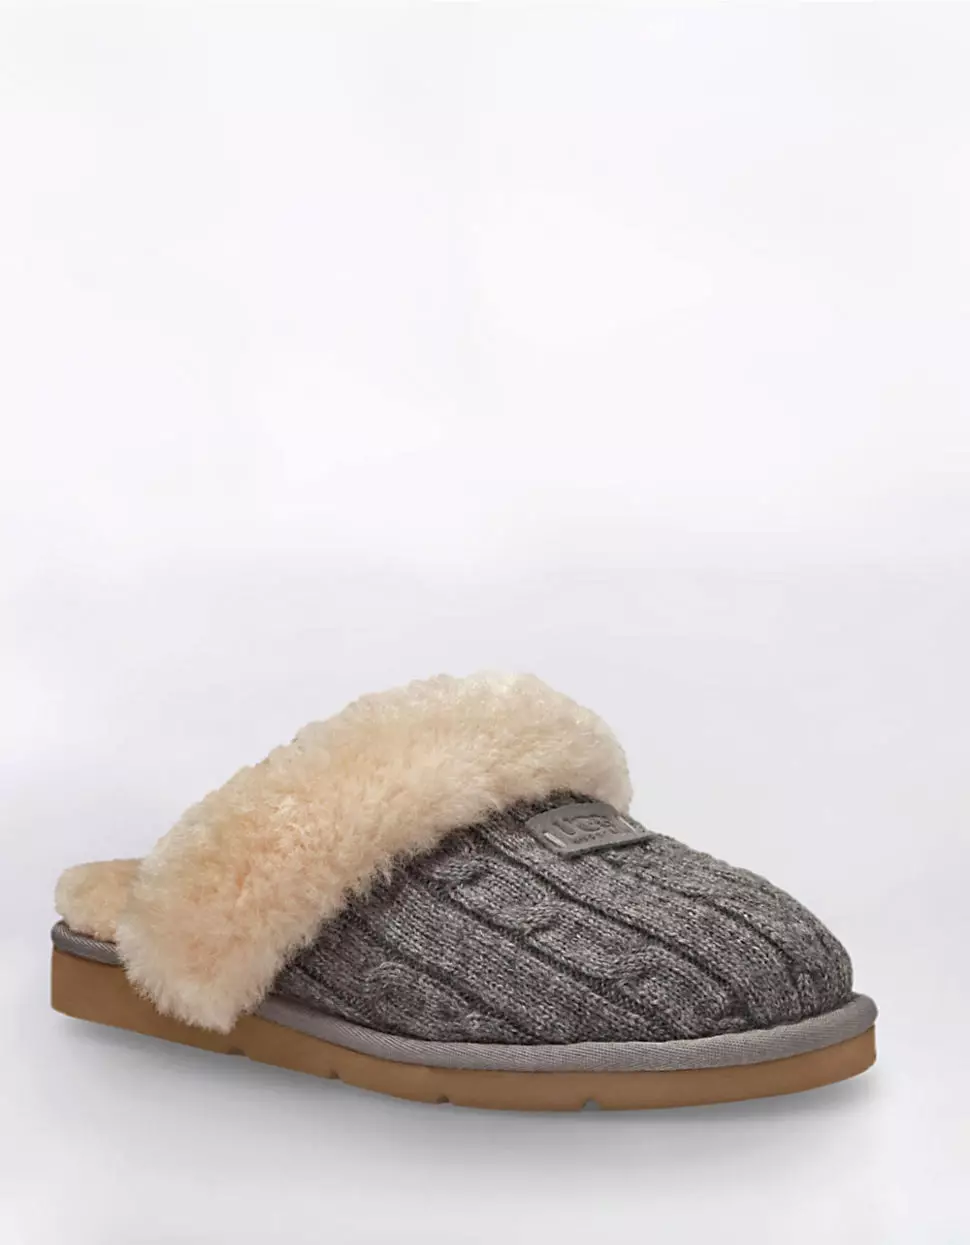 Slippers knitted (picha 72): Mifano kwa watoto na wanawake kwa pekee, nzuri na rahisi chumba slippers - sneakers, Kijapani, kutoka mraba 14259_68